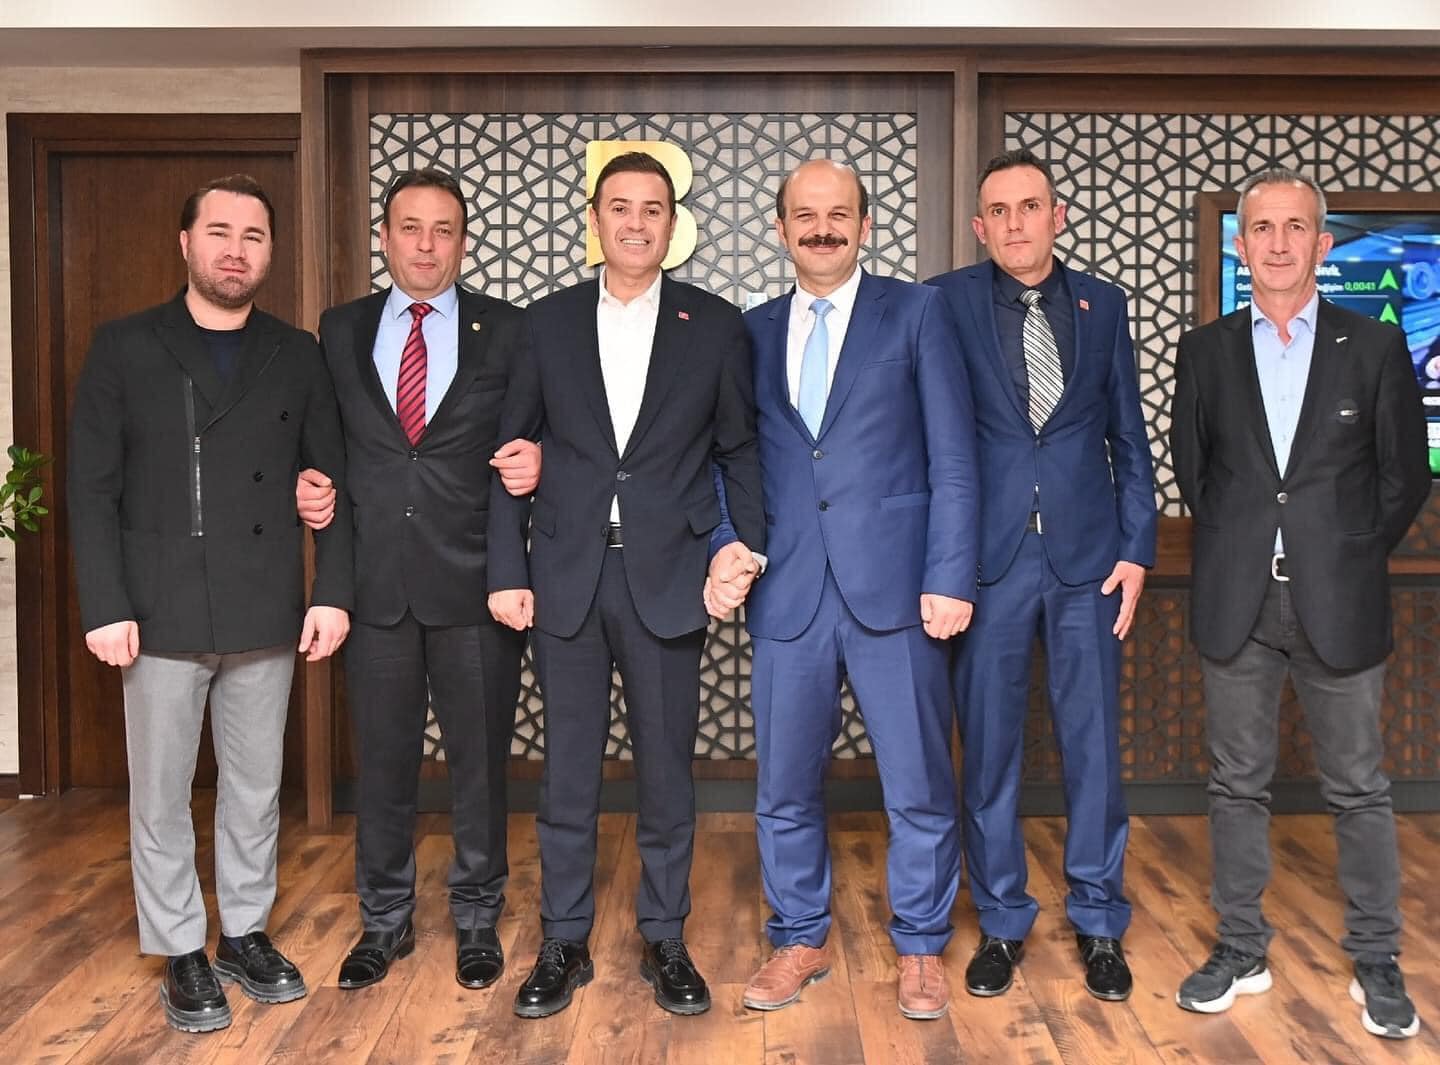 İvrindi Belediye Başkanı, Balıkesir Büyükşehir Belediye Başkanı'na nezaket ziyareti gerçekleştirdi.